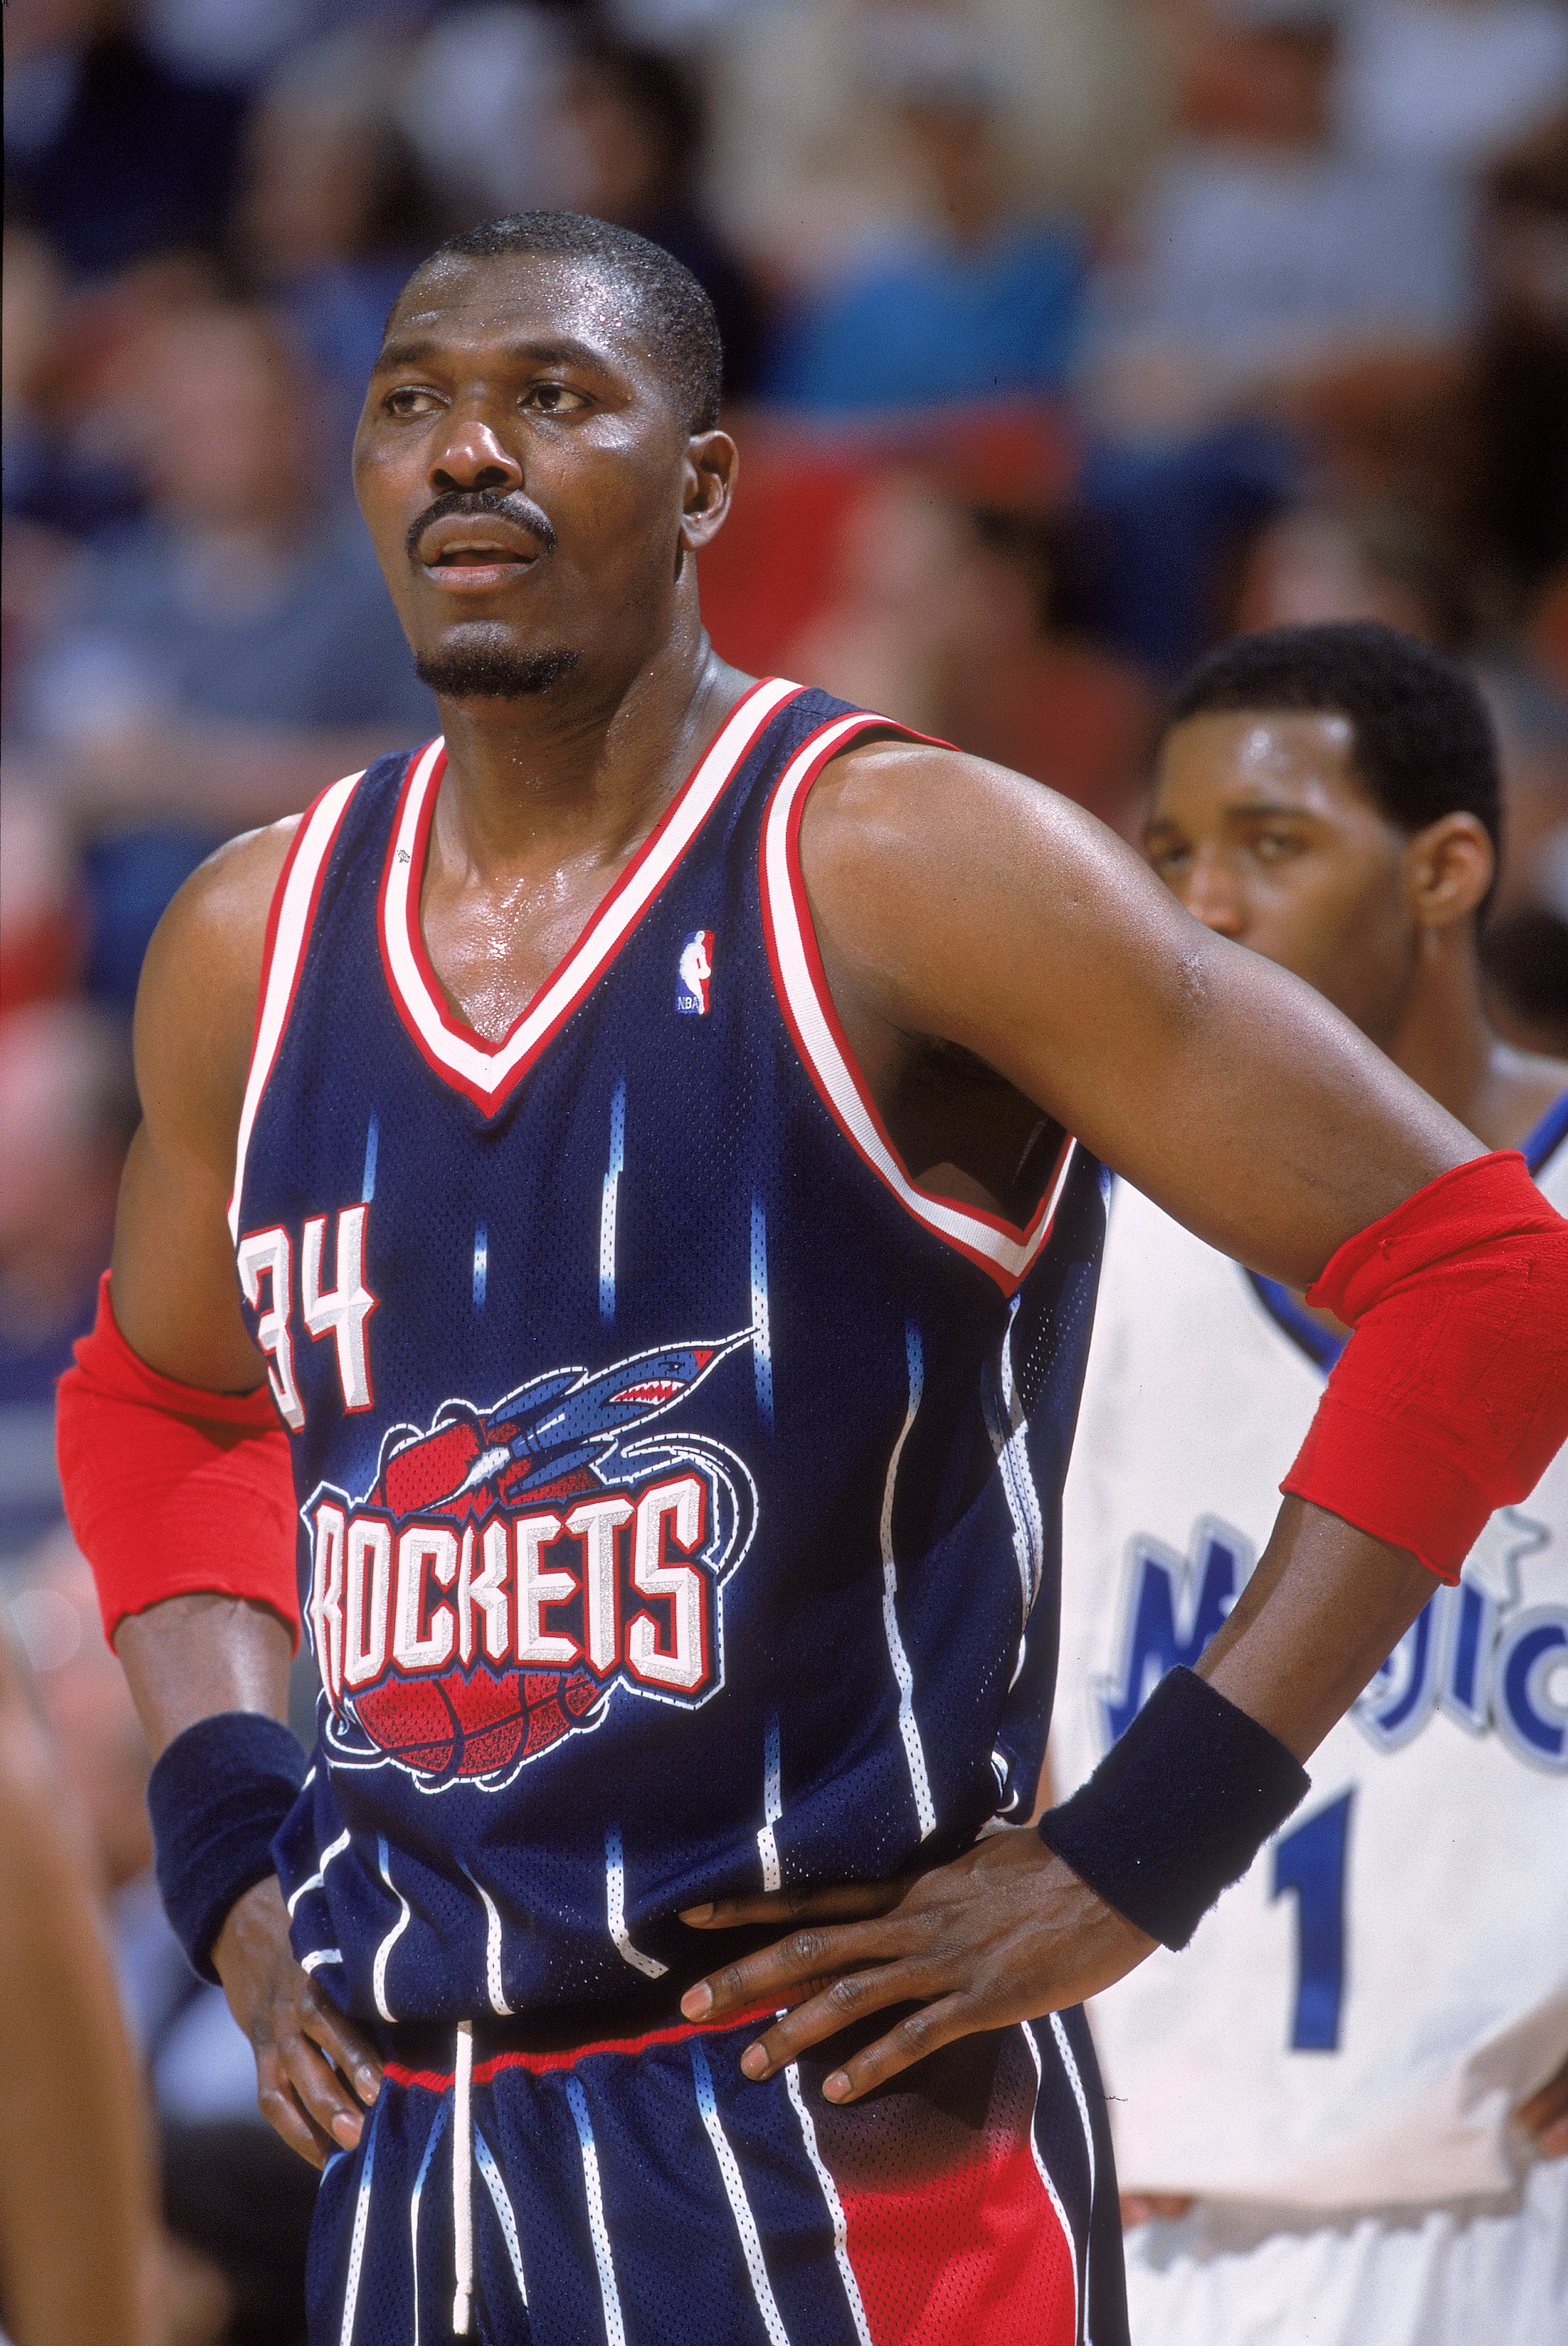 Hakeem Olajuwon Houston Rockets 1996-1997 White Authentic Jersey